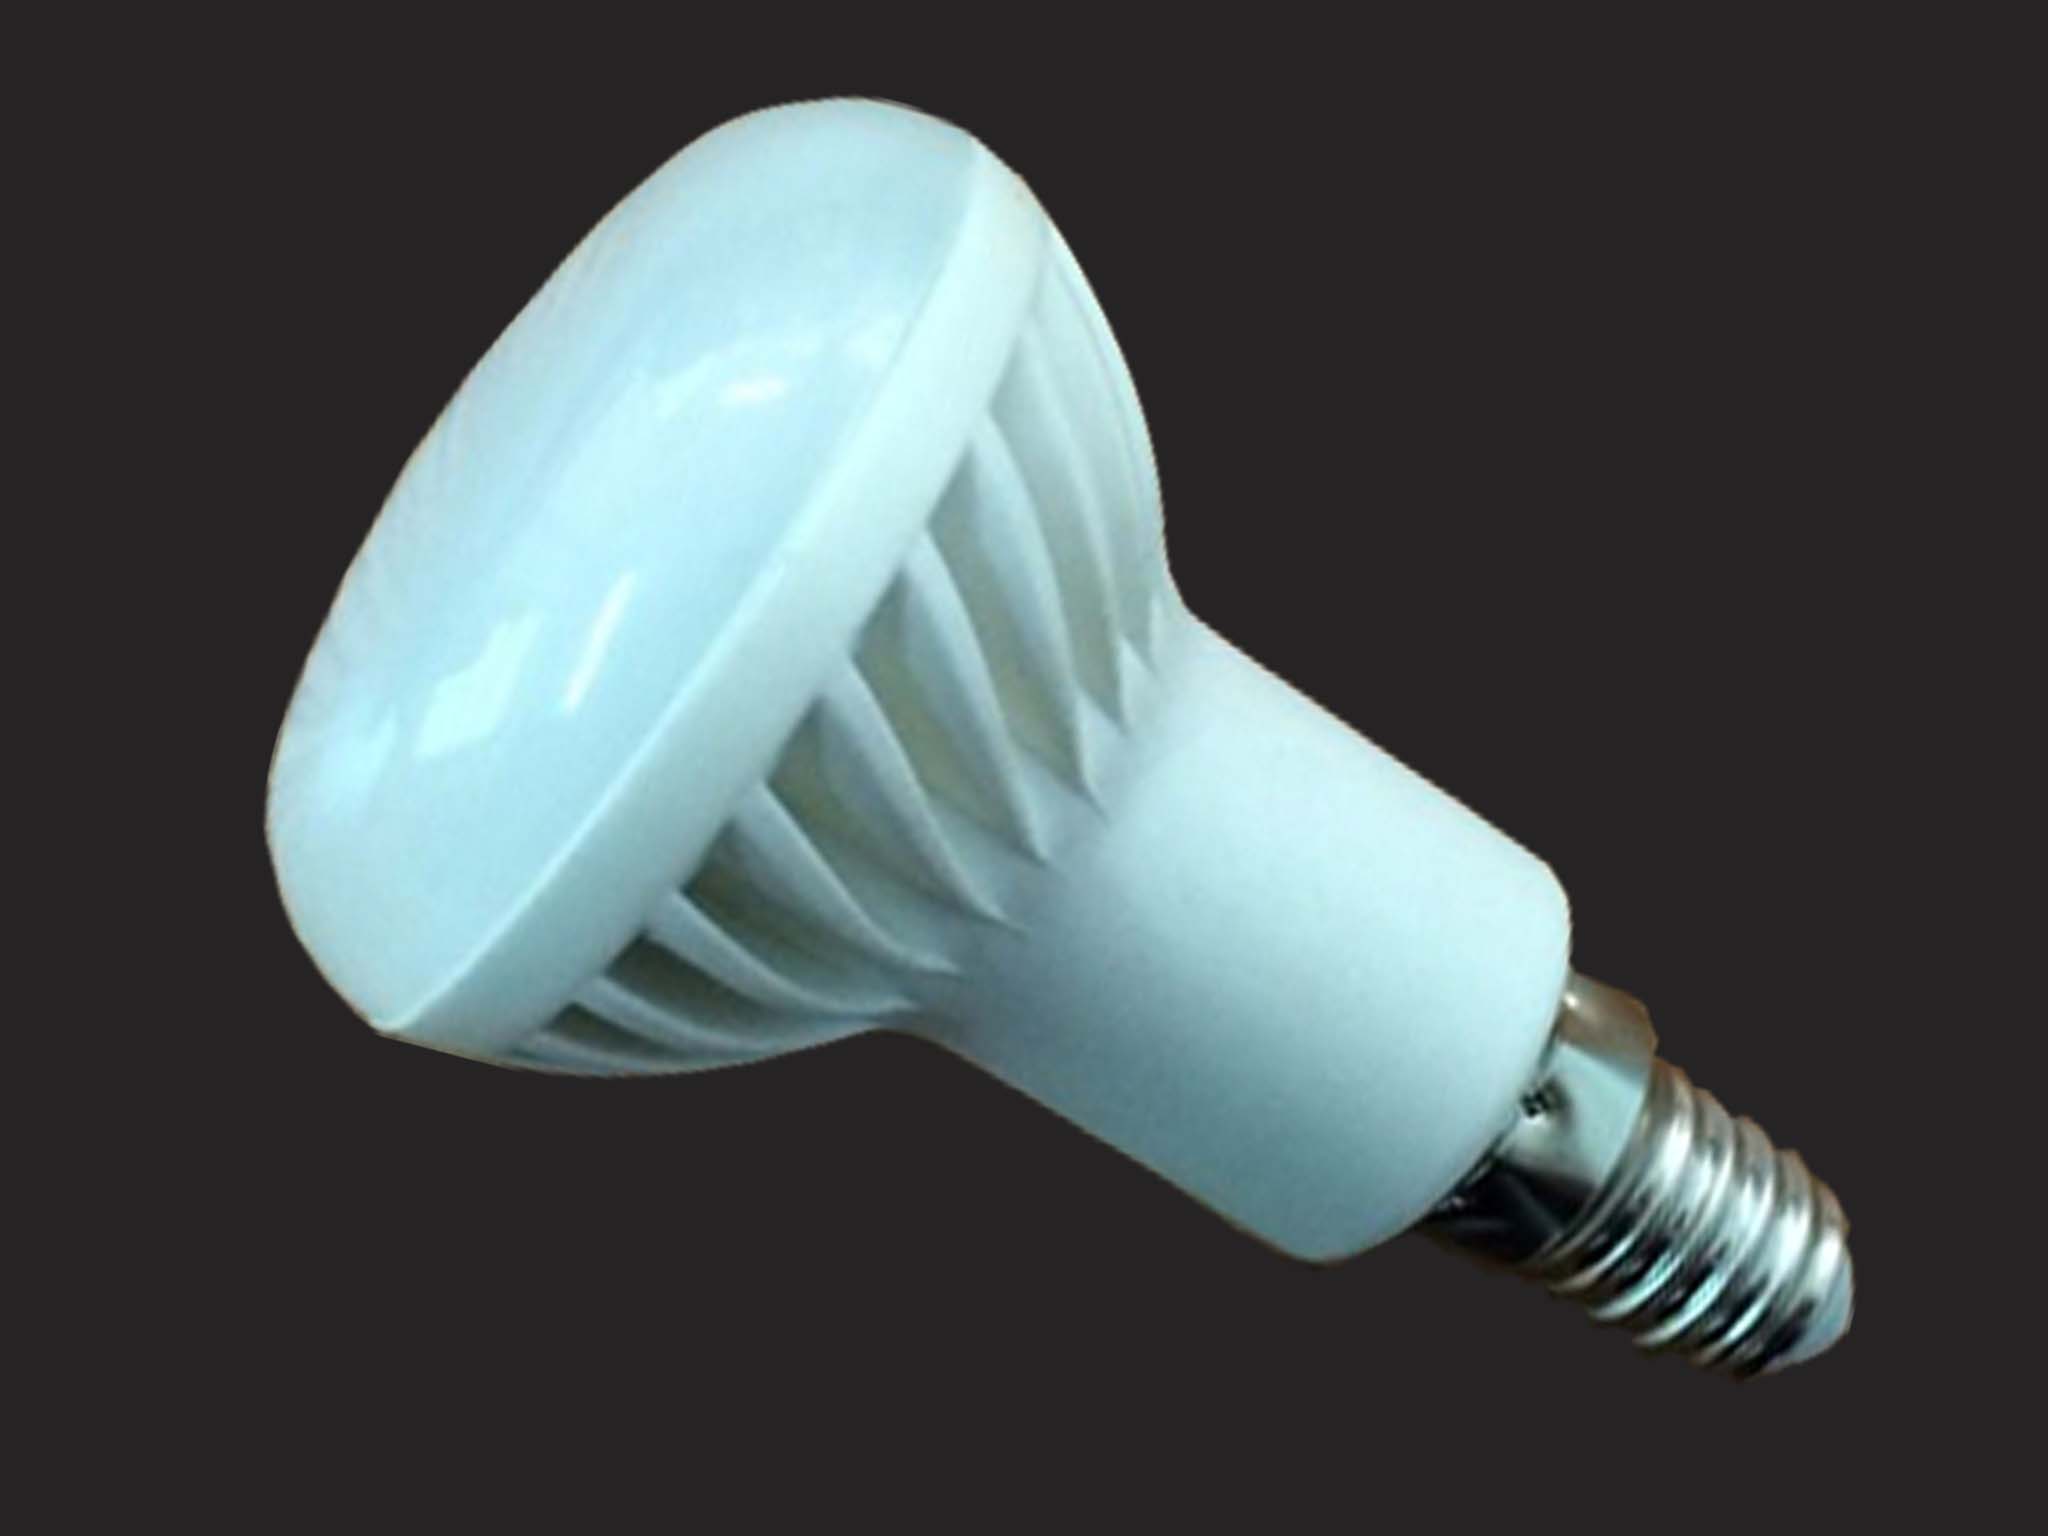 3W R39 LED bulb light